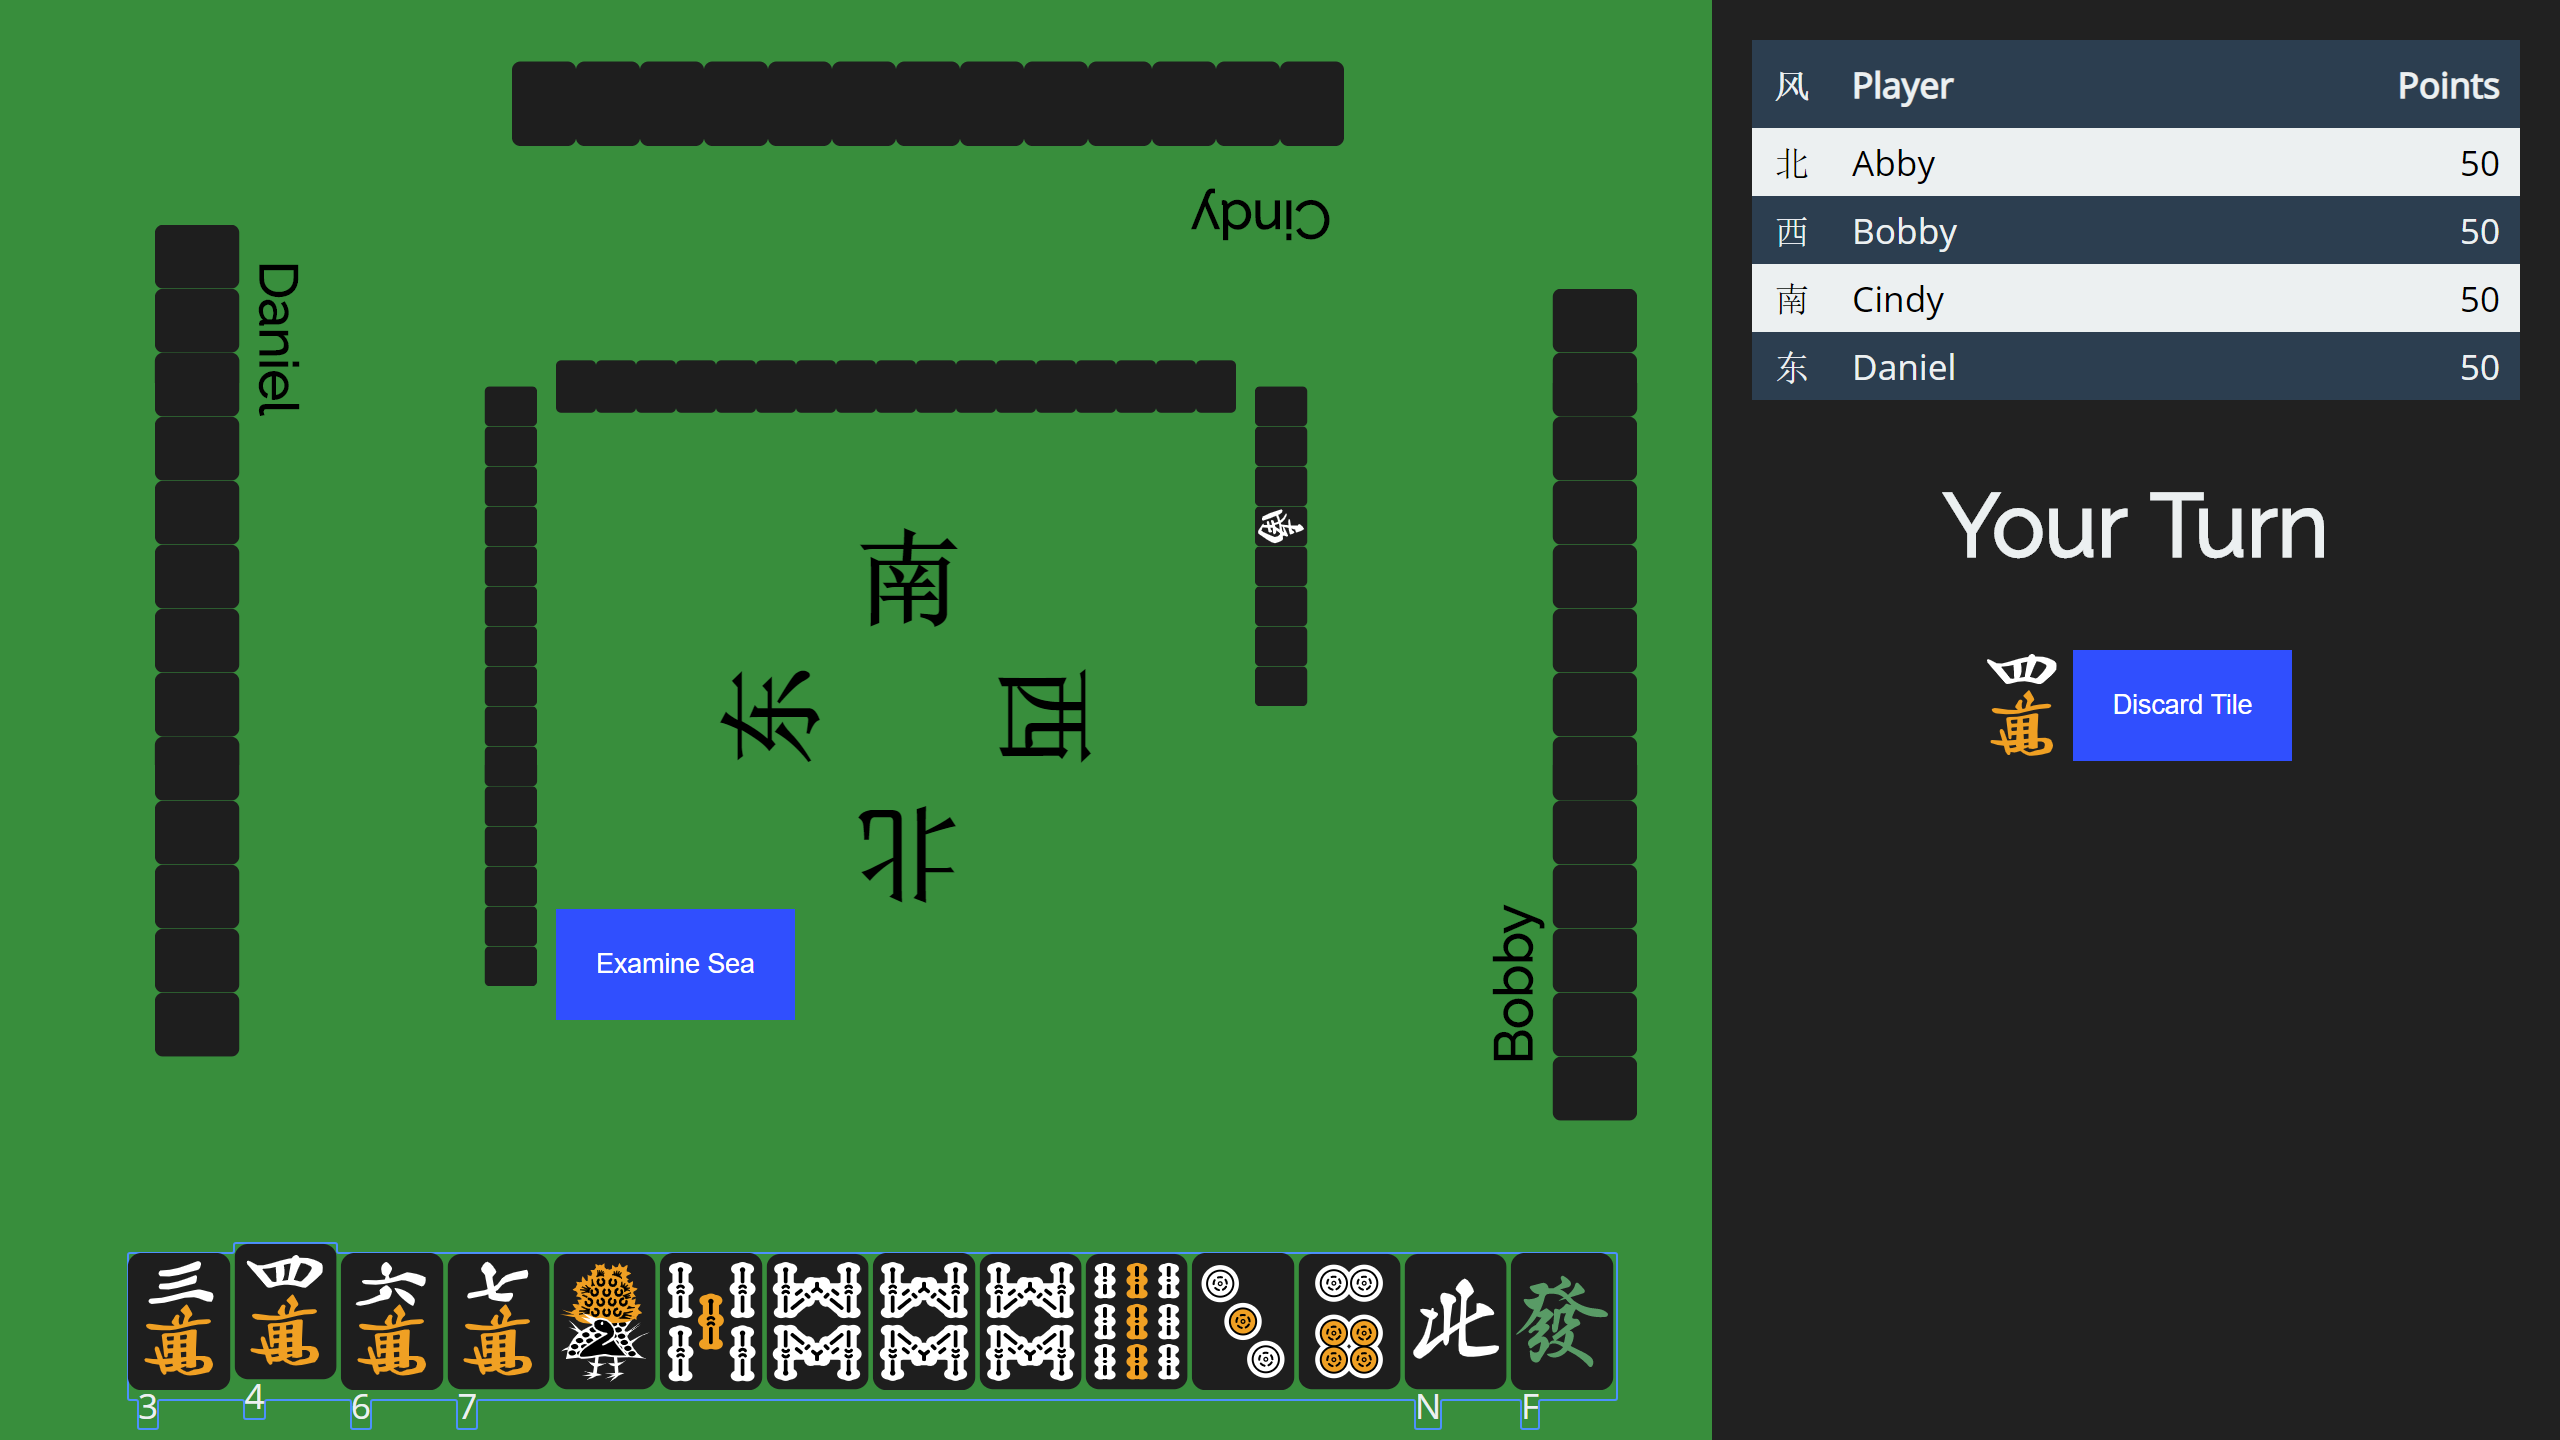 A screenshot from Tianjin Mahjong